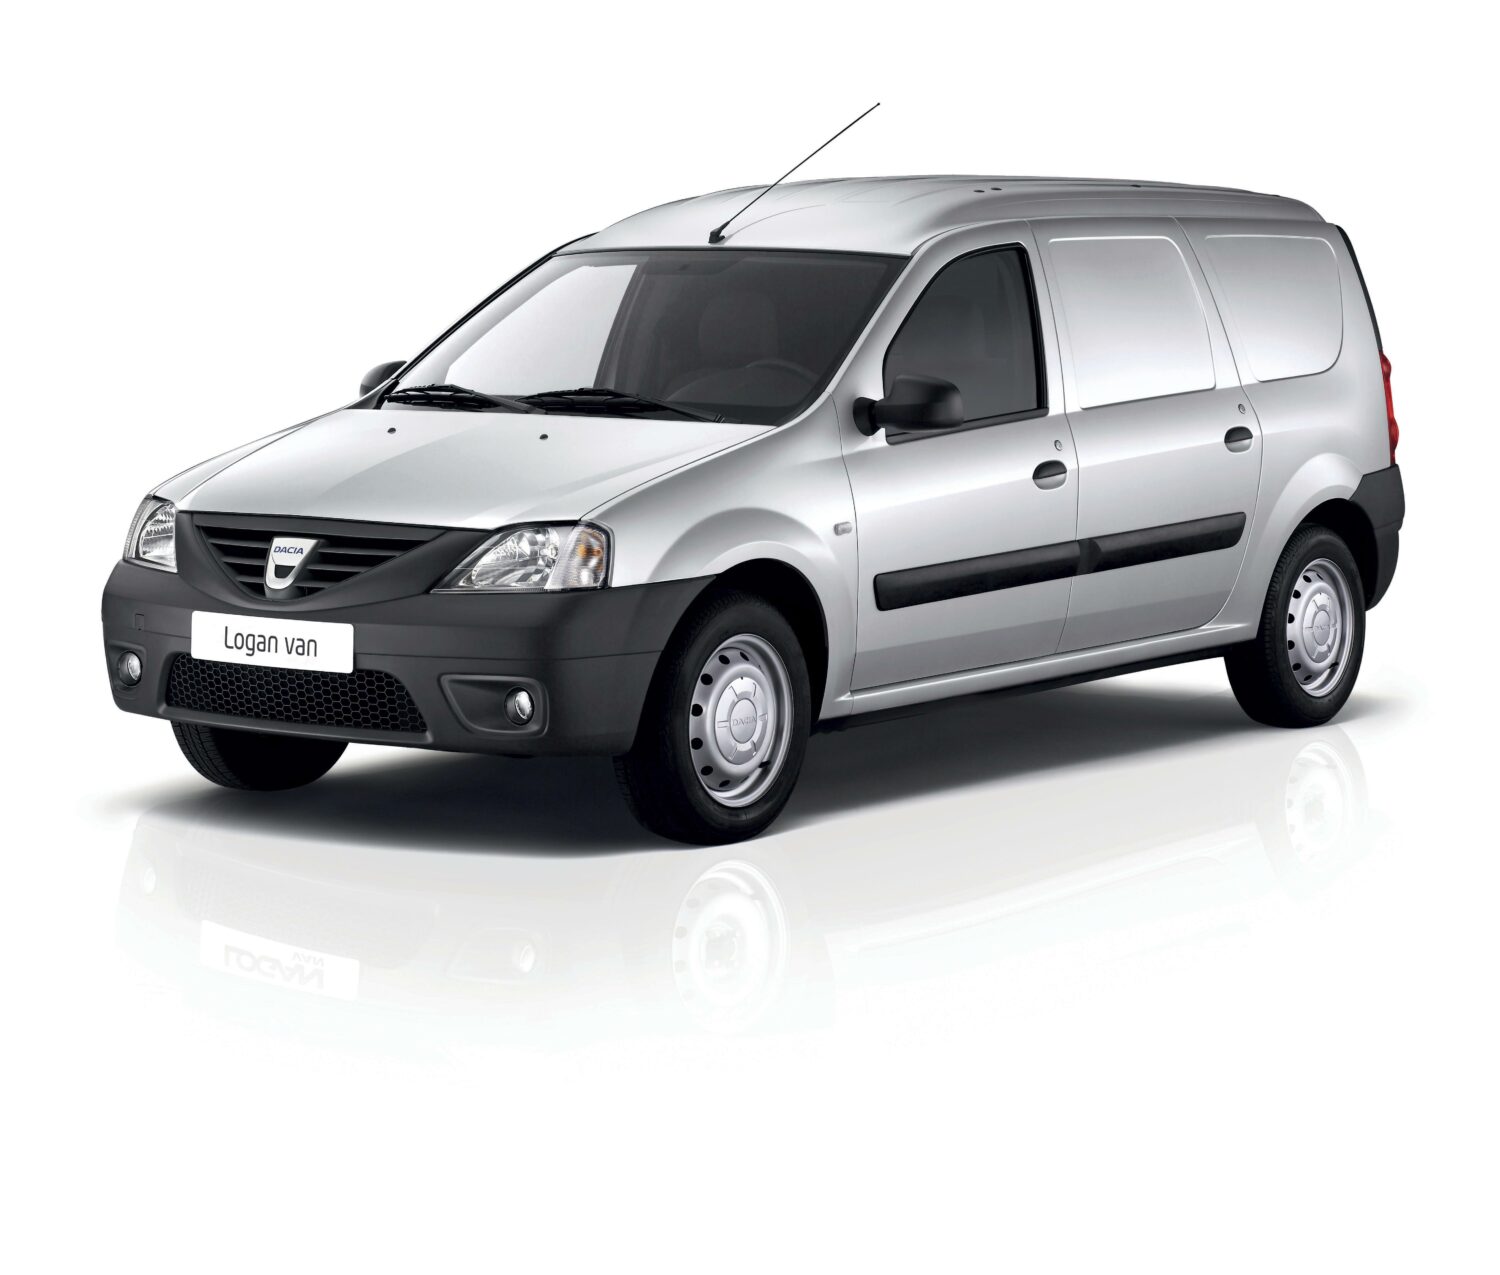 2007 - Dacia LOGAN VAN.jpg